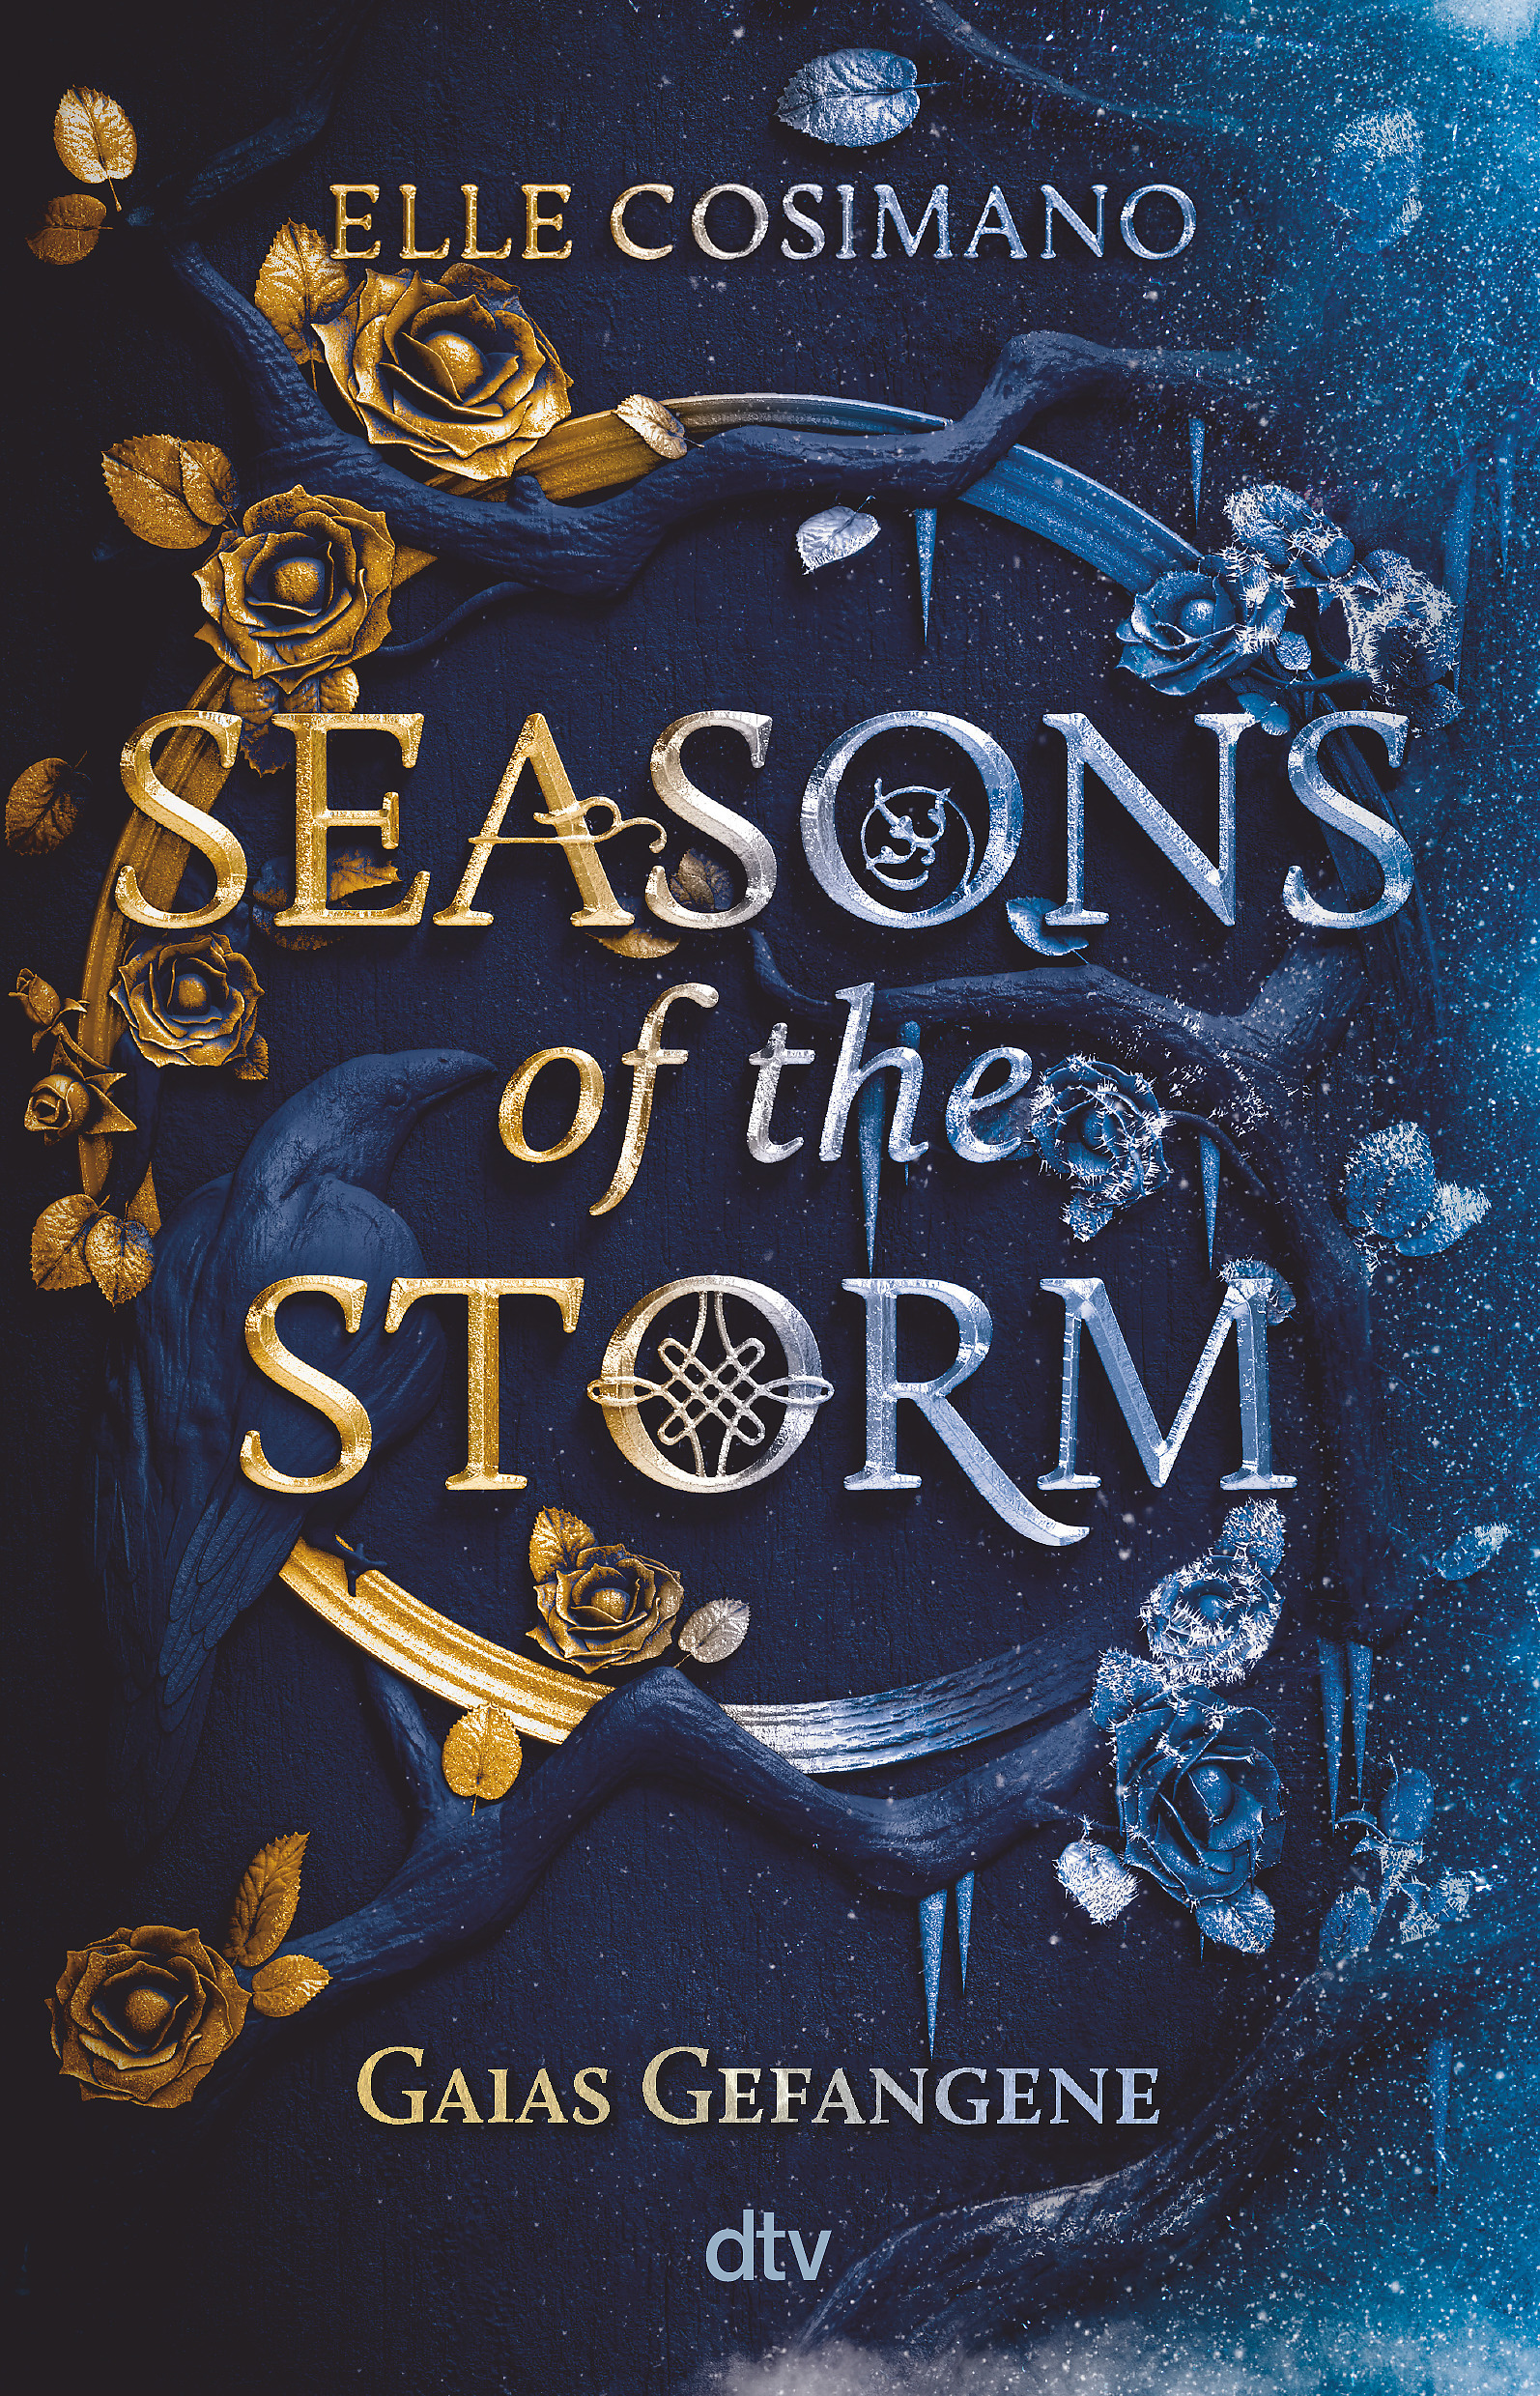 Bücherblog. Neuerscheinungen. Buchcover. Seasons of the Storm - Gaias Gefangene (Band 1) von Elle Cosimano. Jugendbuch. Fantasy. dtv.